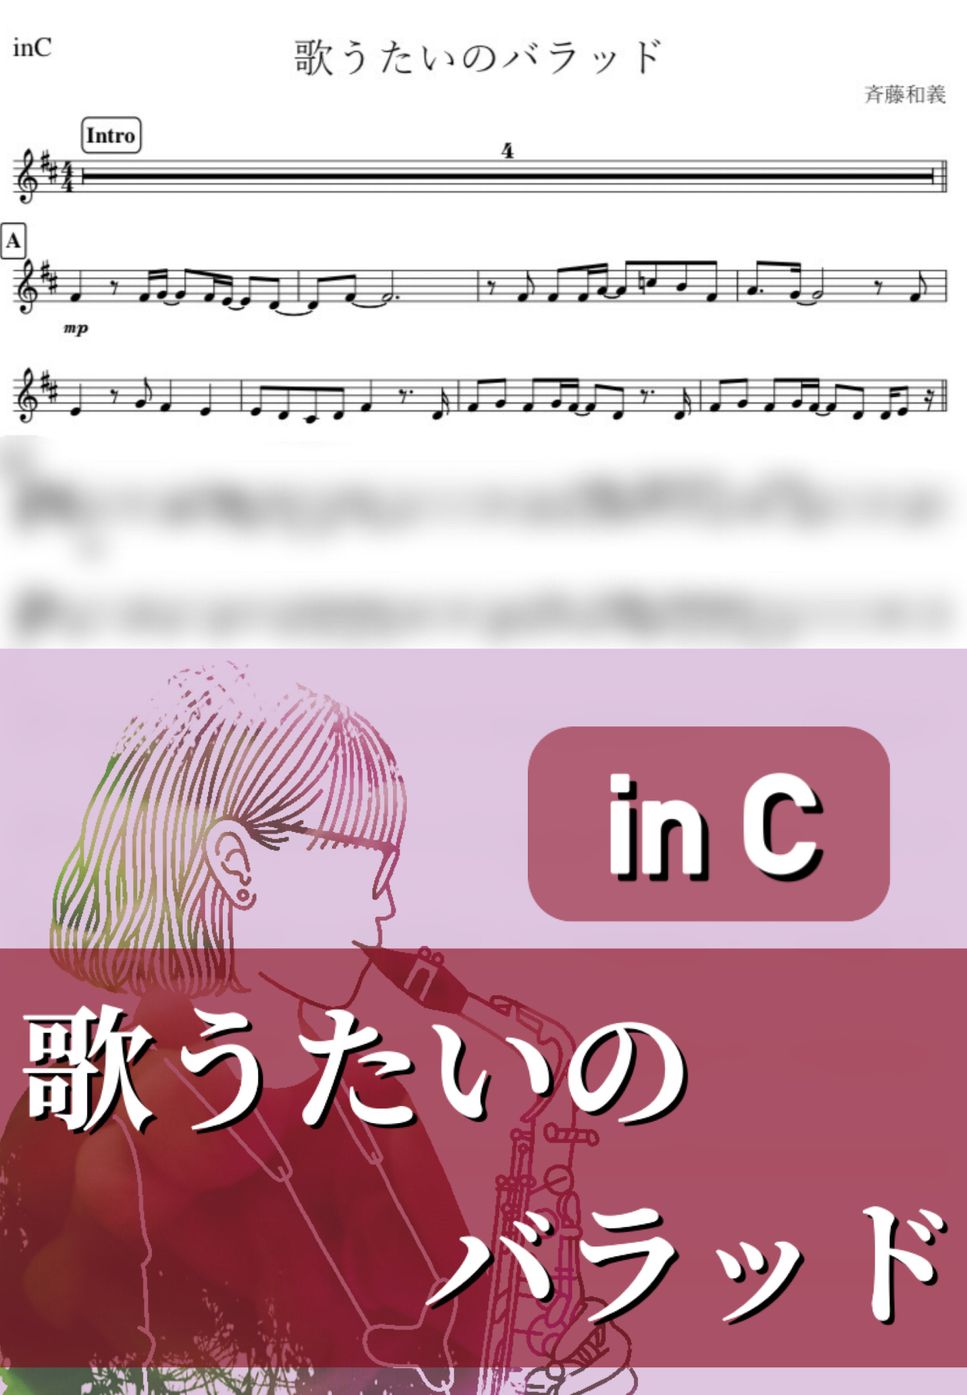 斉藤和義 - 歌うたいのバラッド (C) by kanamusic